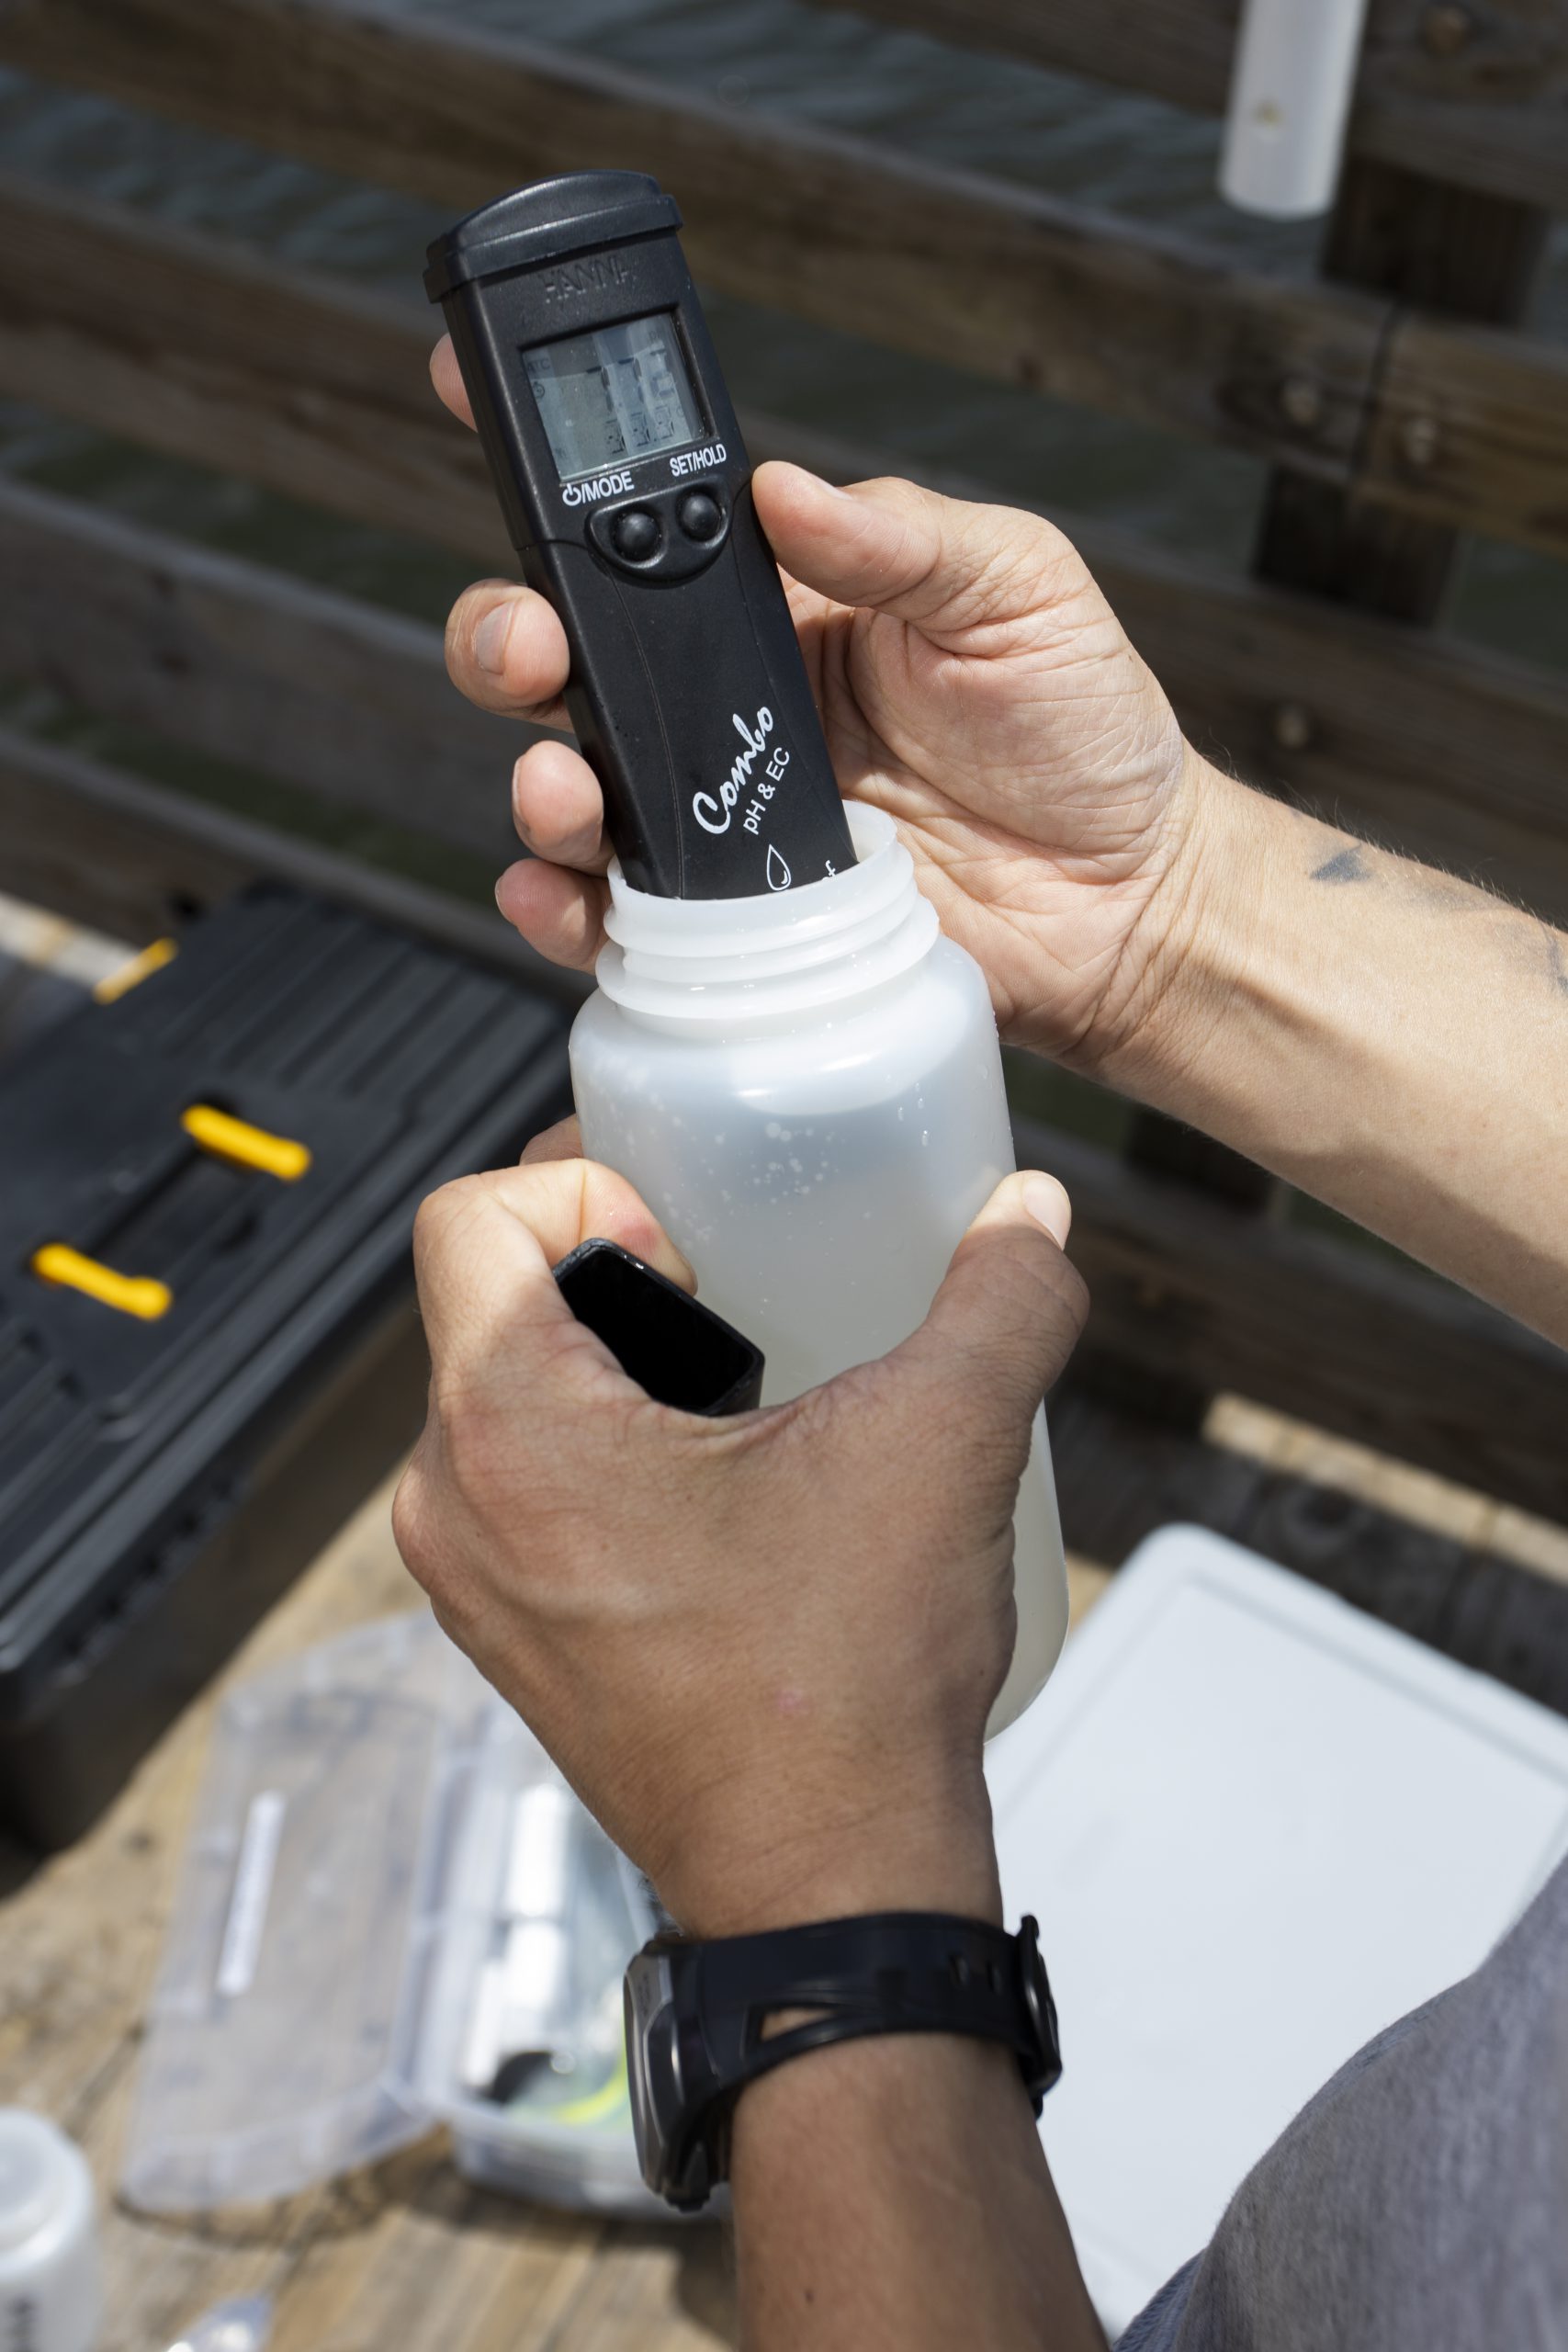 Photo of handheld field meter being used to measure analyze water sample.